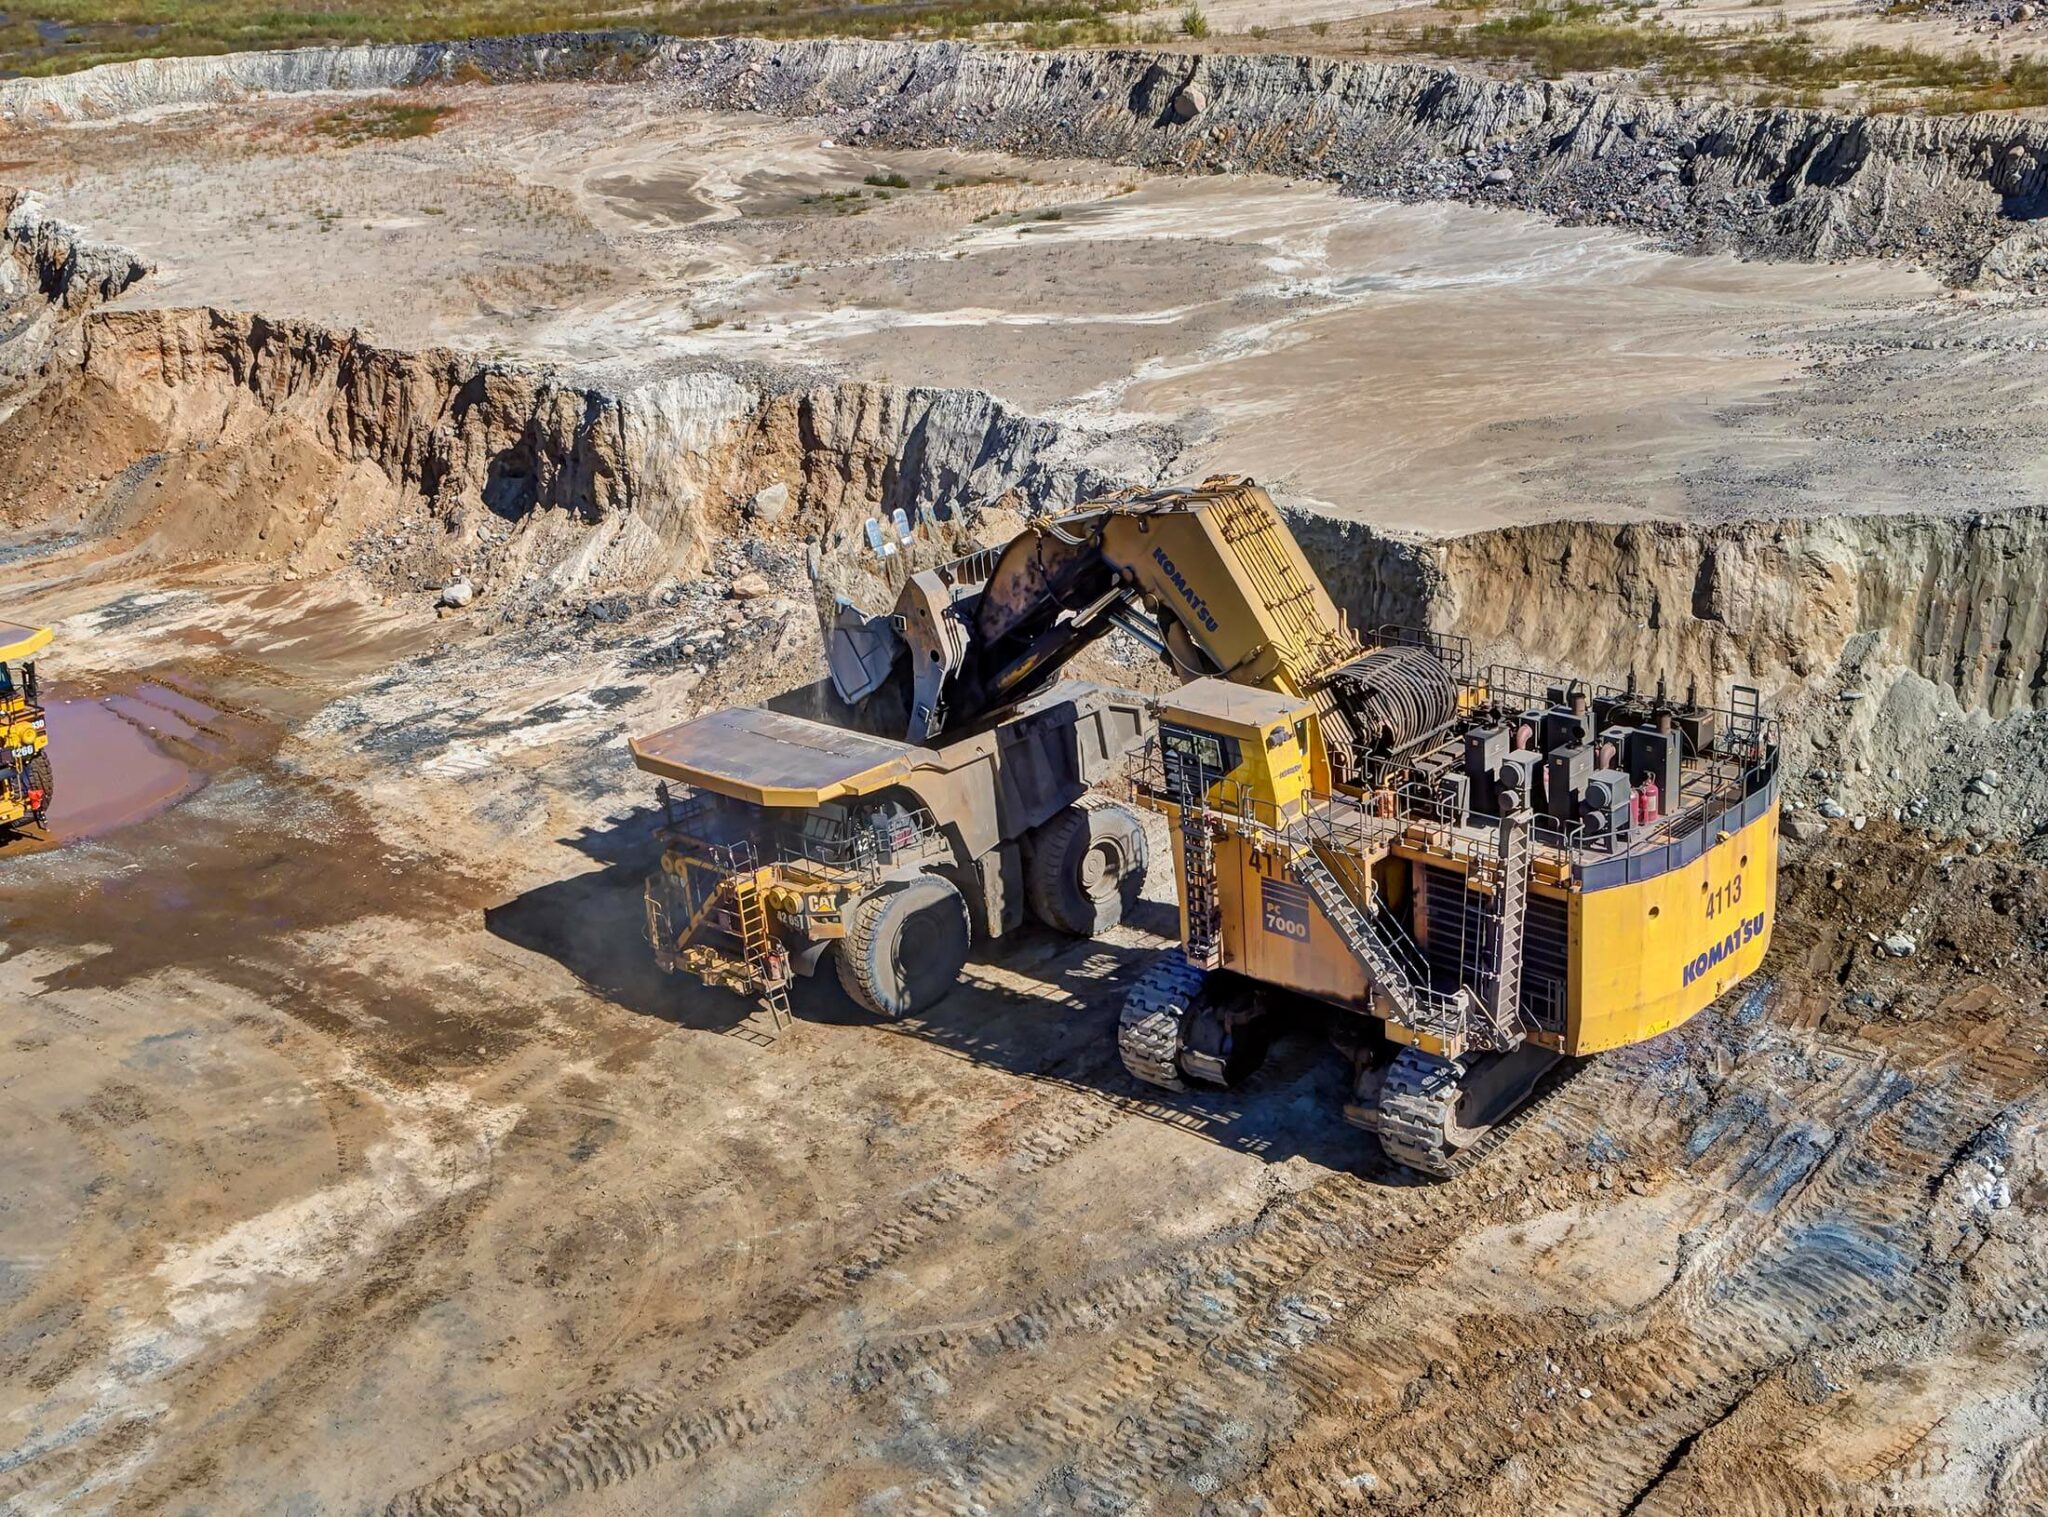 A mine shovel empties dirt into a nearby dumptruck